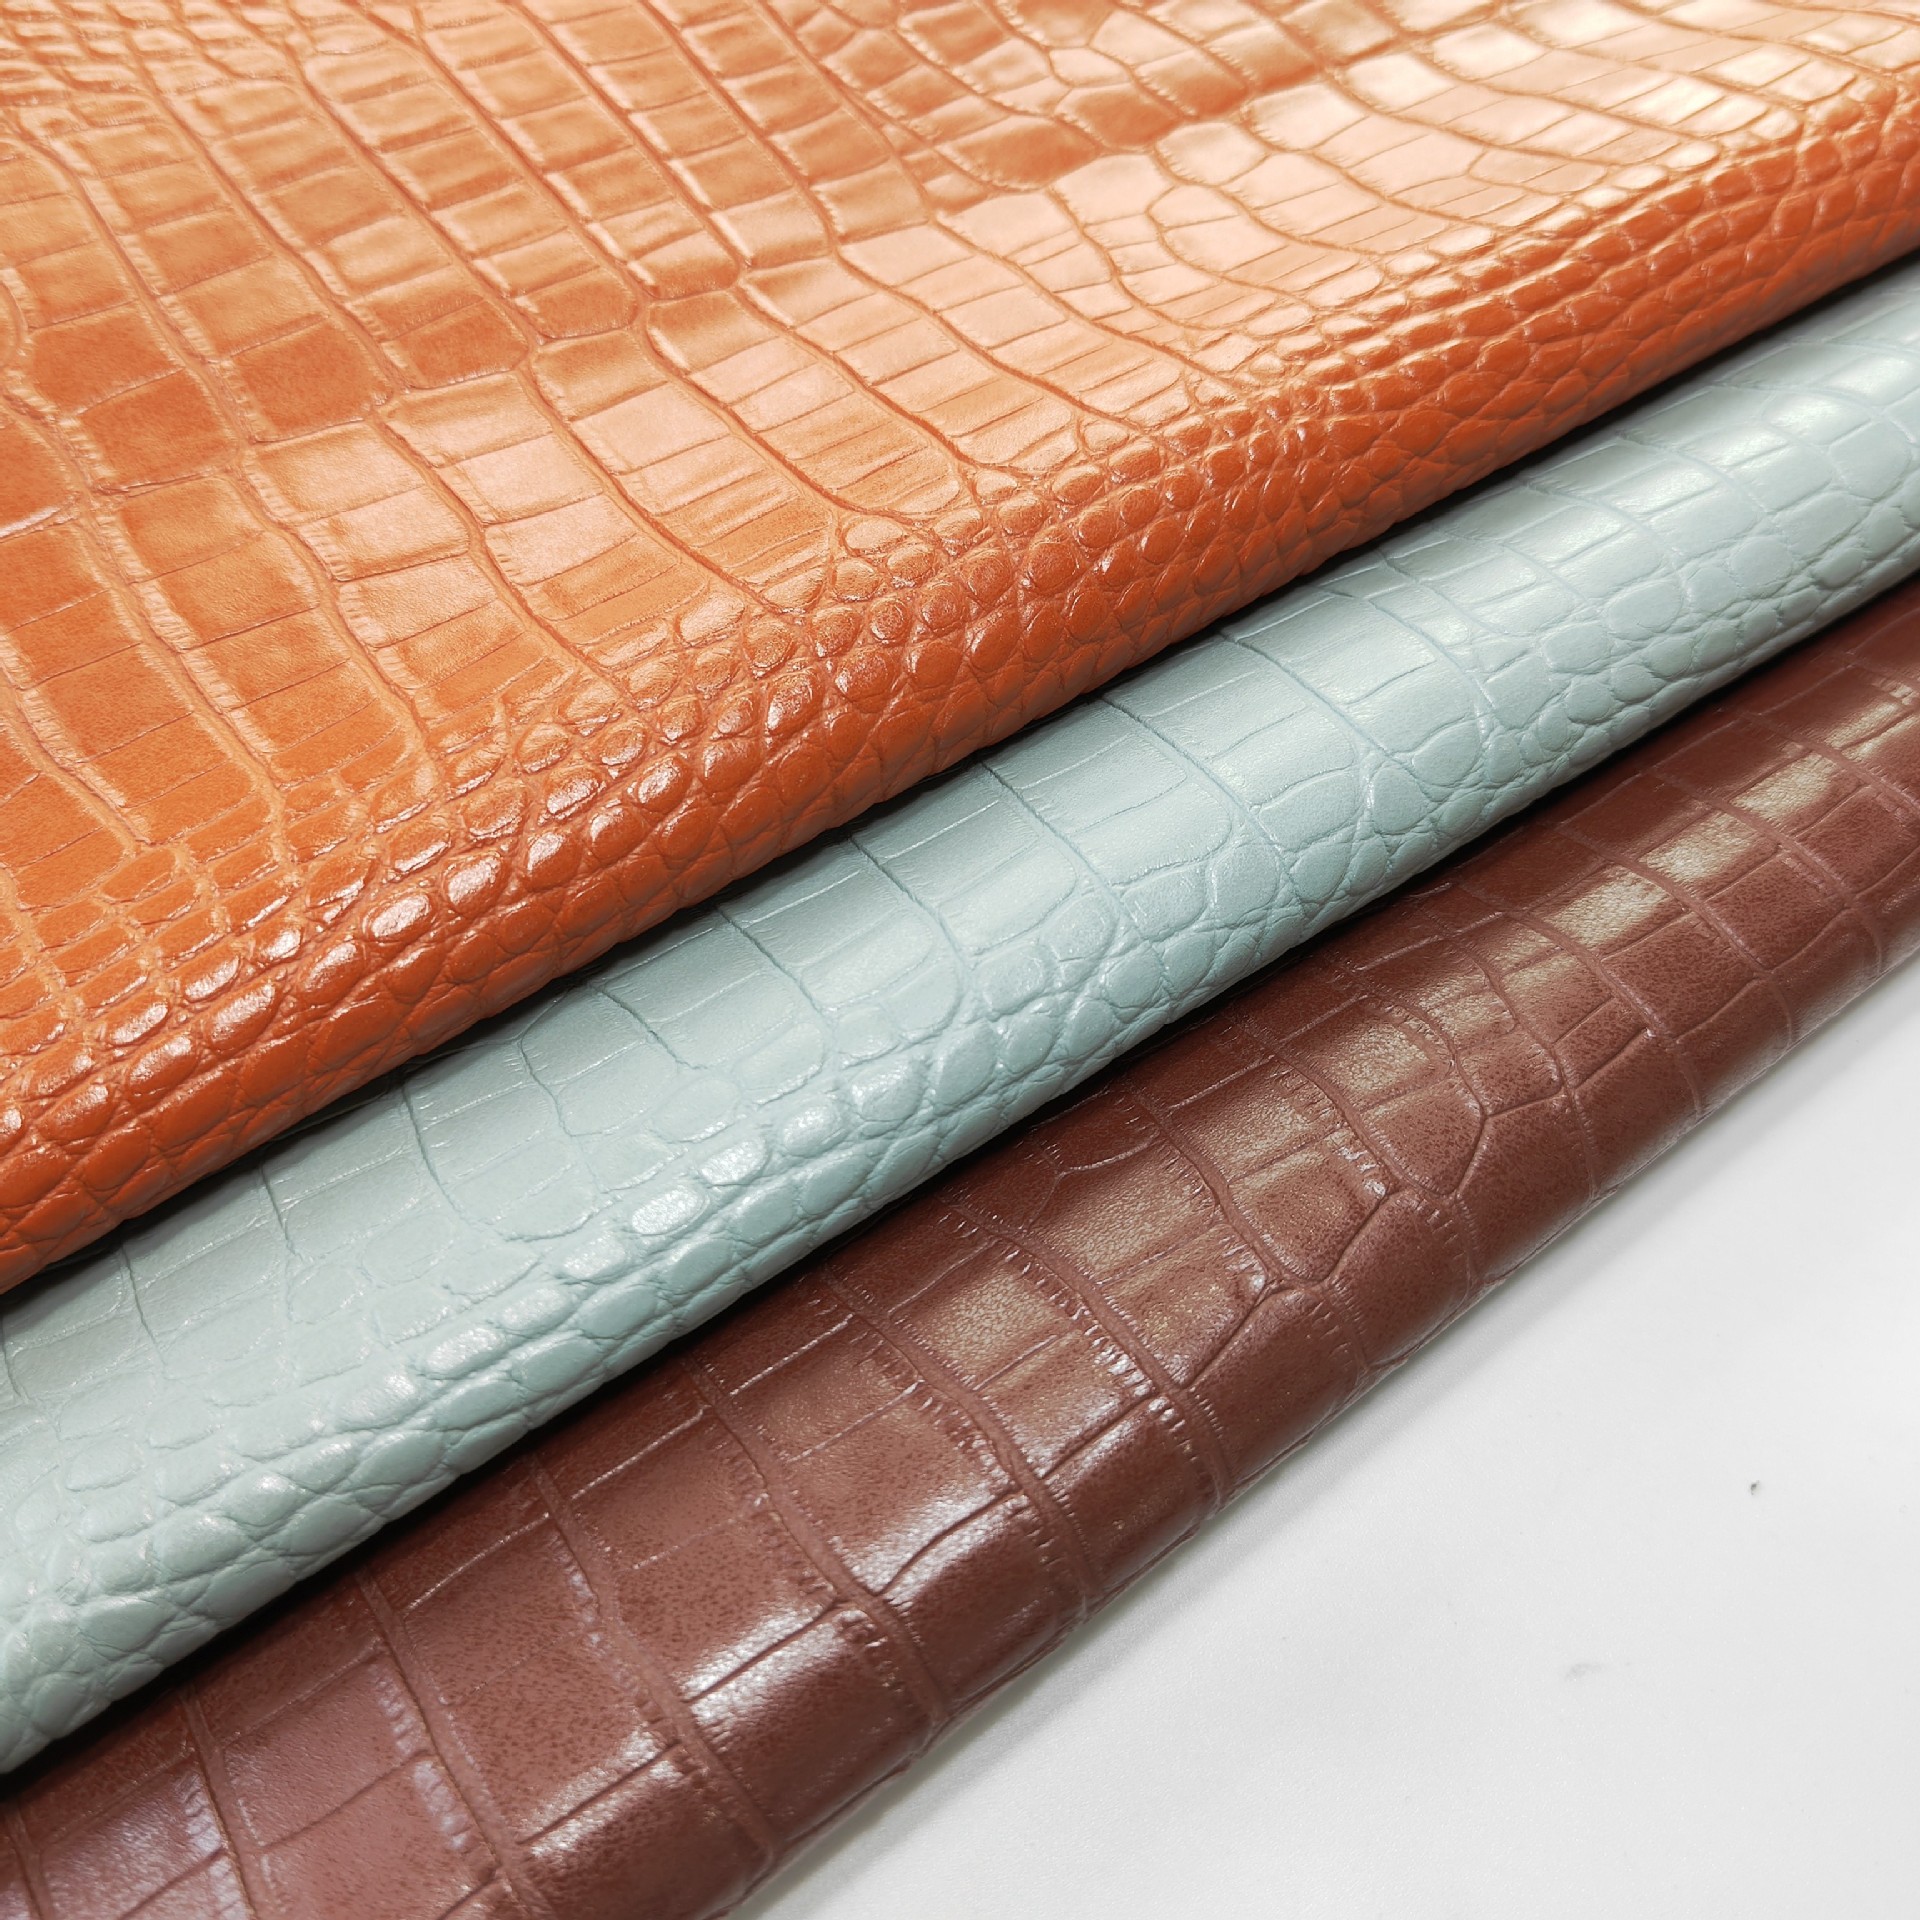 厂家直销新款手袋箱包皮革面料 环保鳄鱼纹石头纹PVC人造革  现货